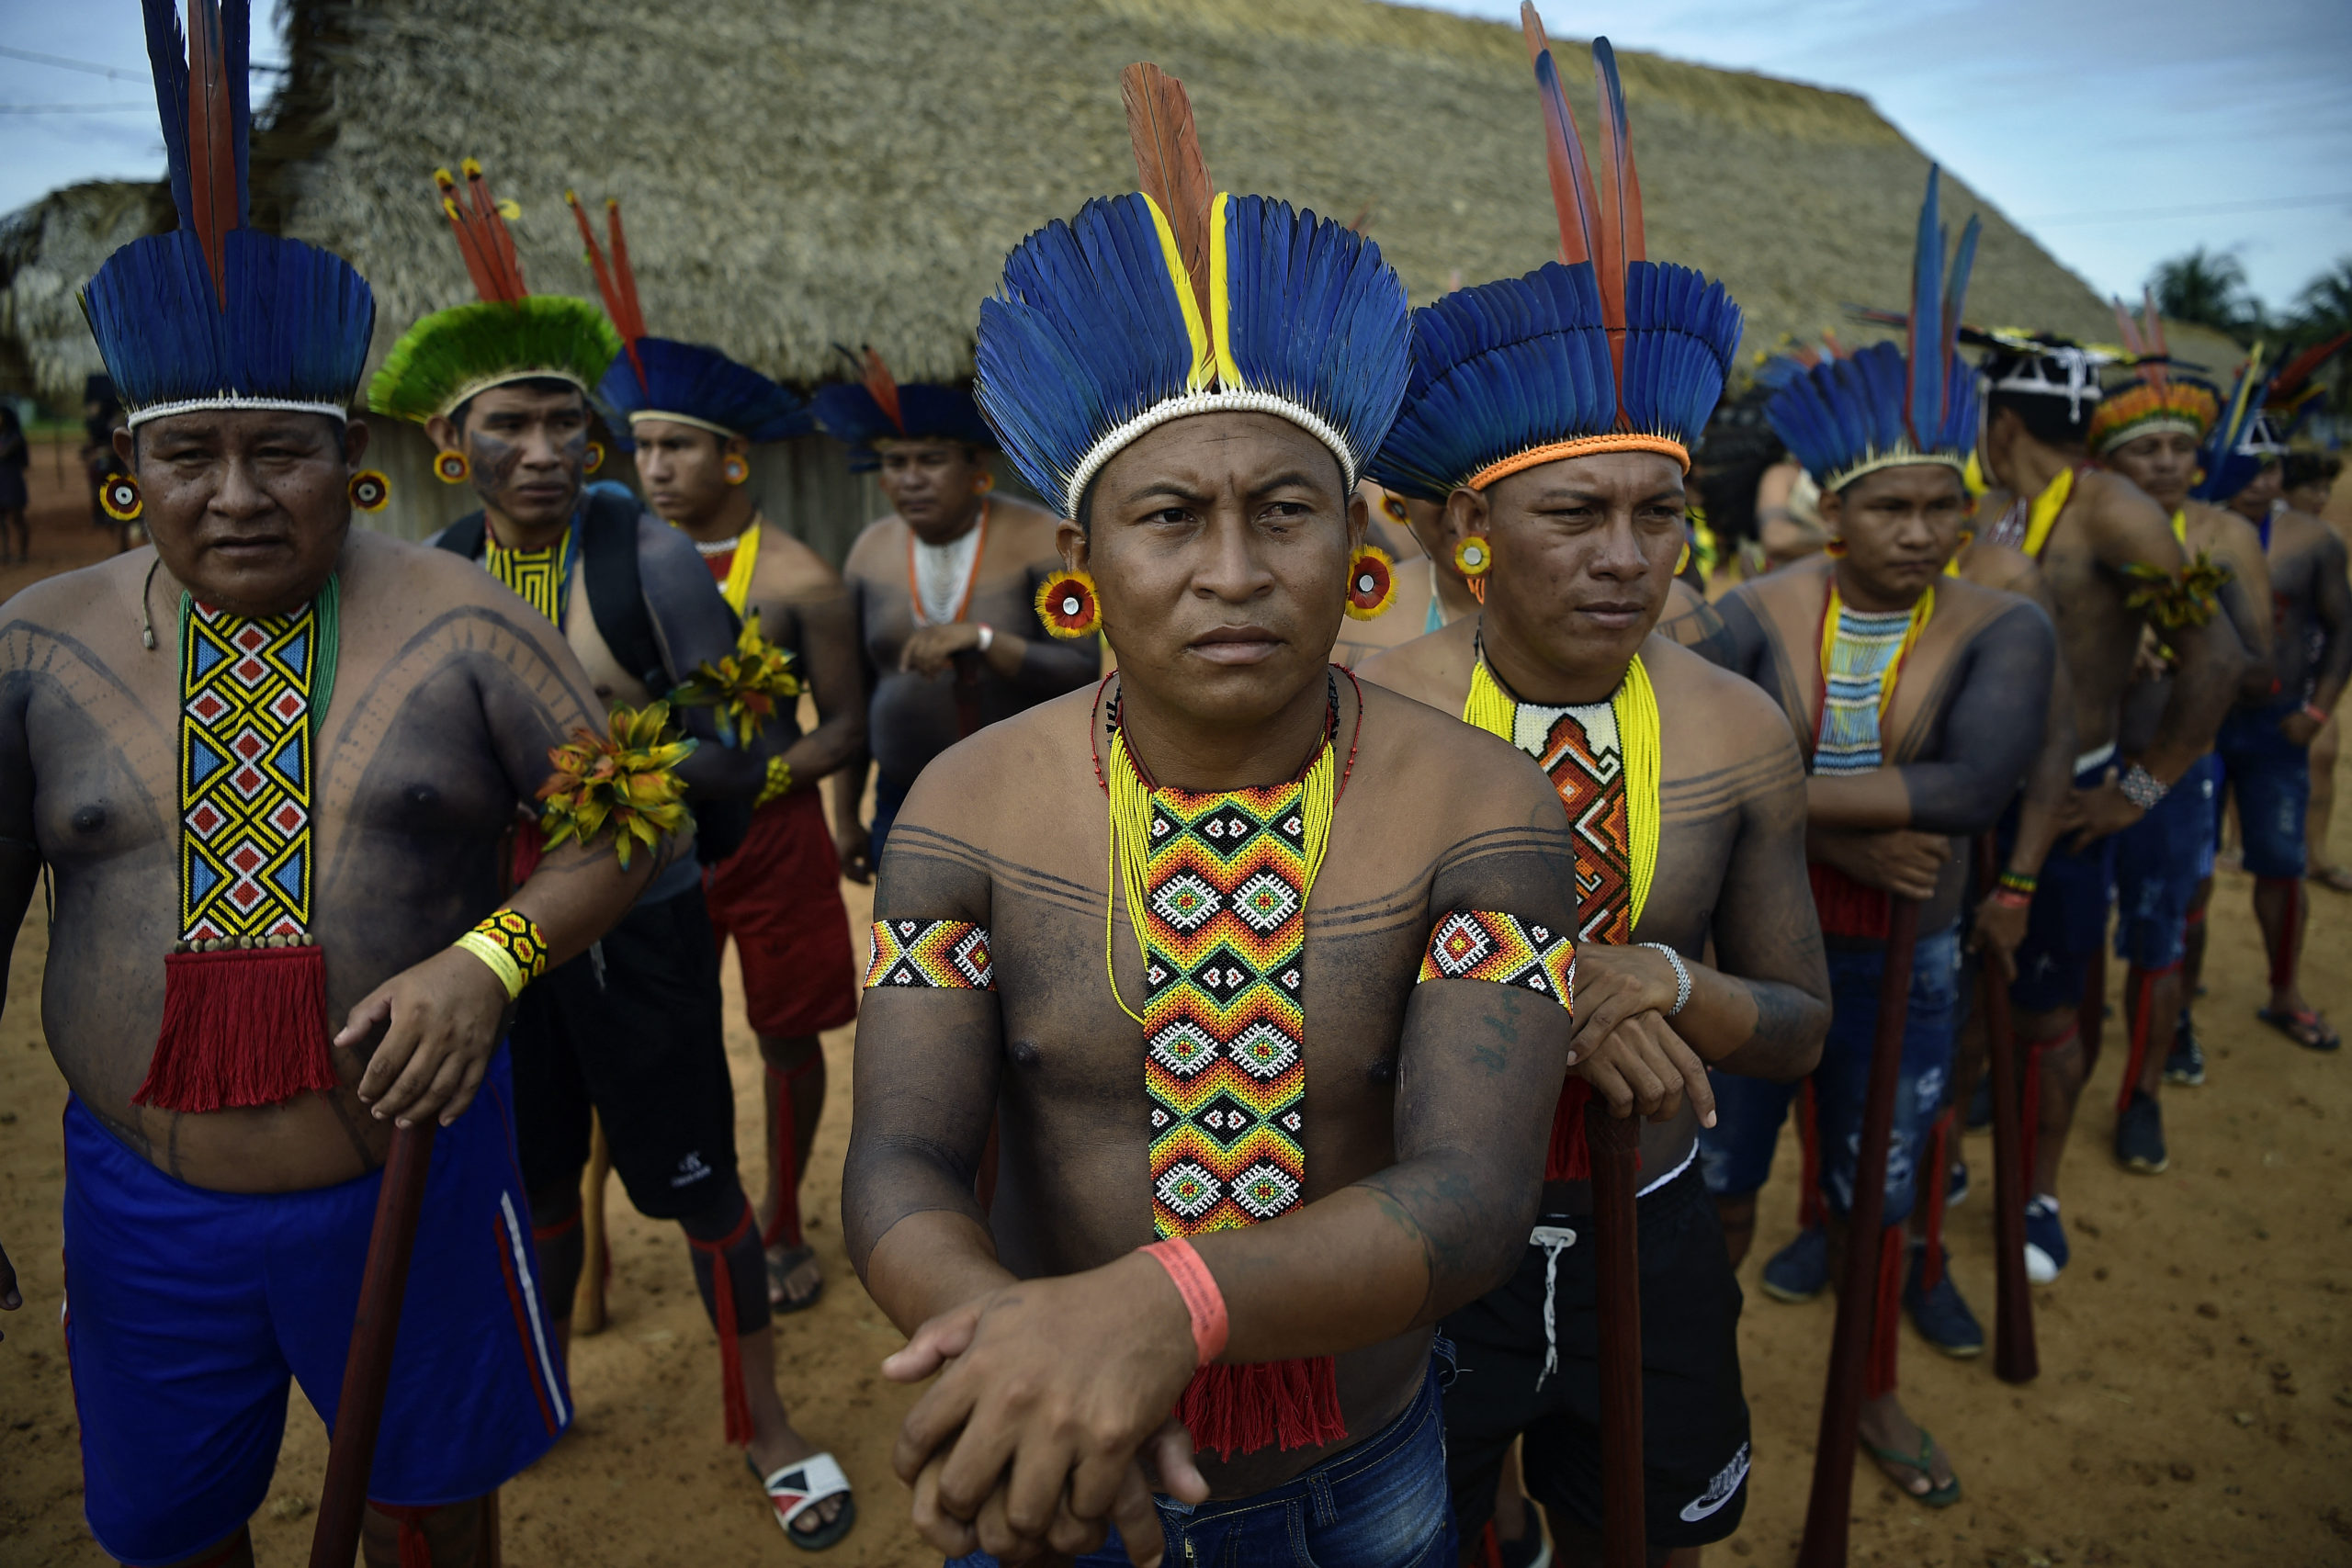 Brazil legfelsőbb bíróság: Az őshonos népcsoportoknak joguk van őseik földjének visszaszerzésére